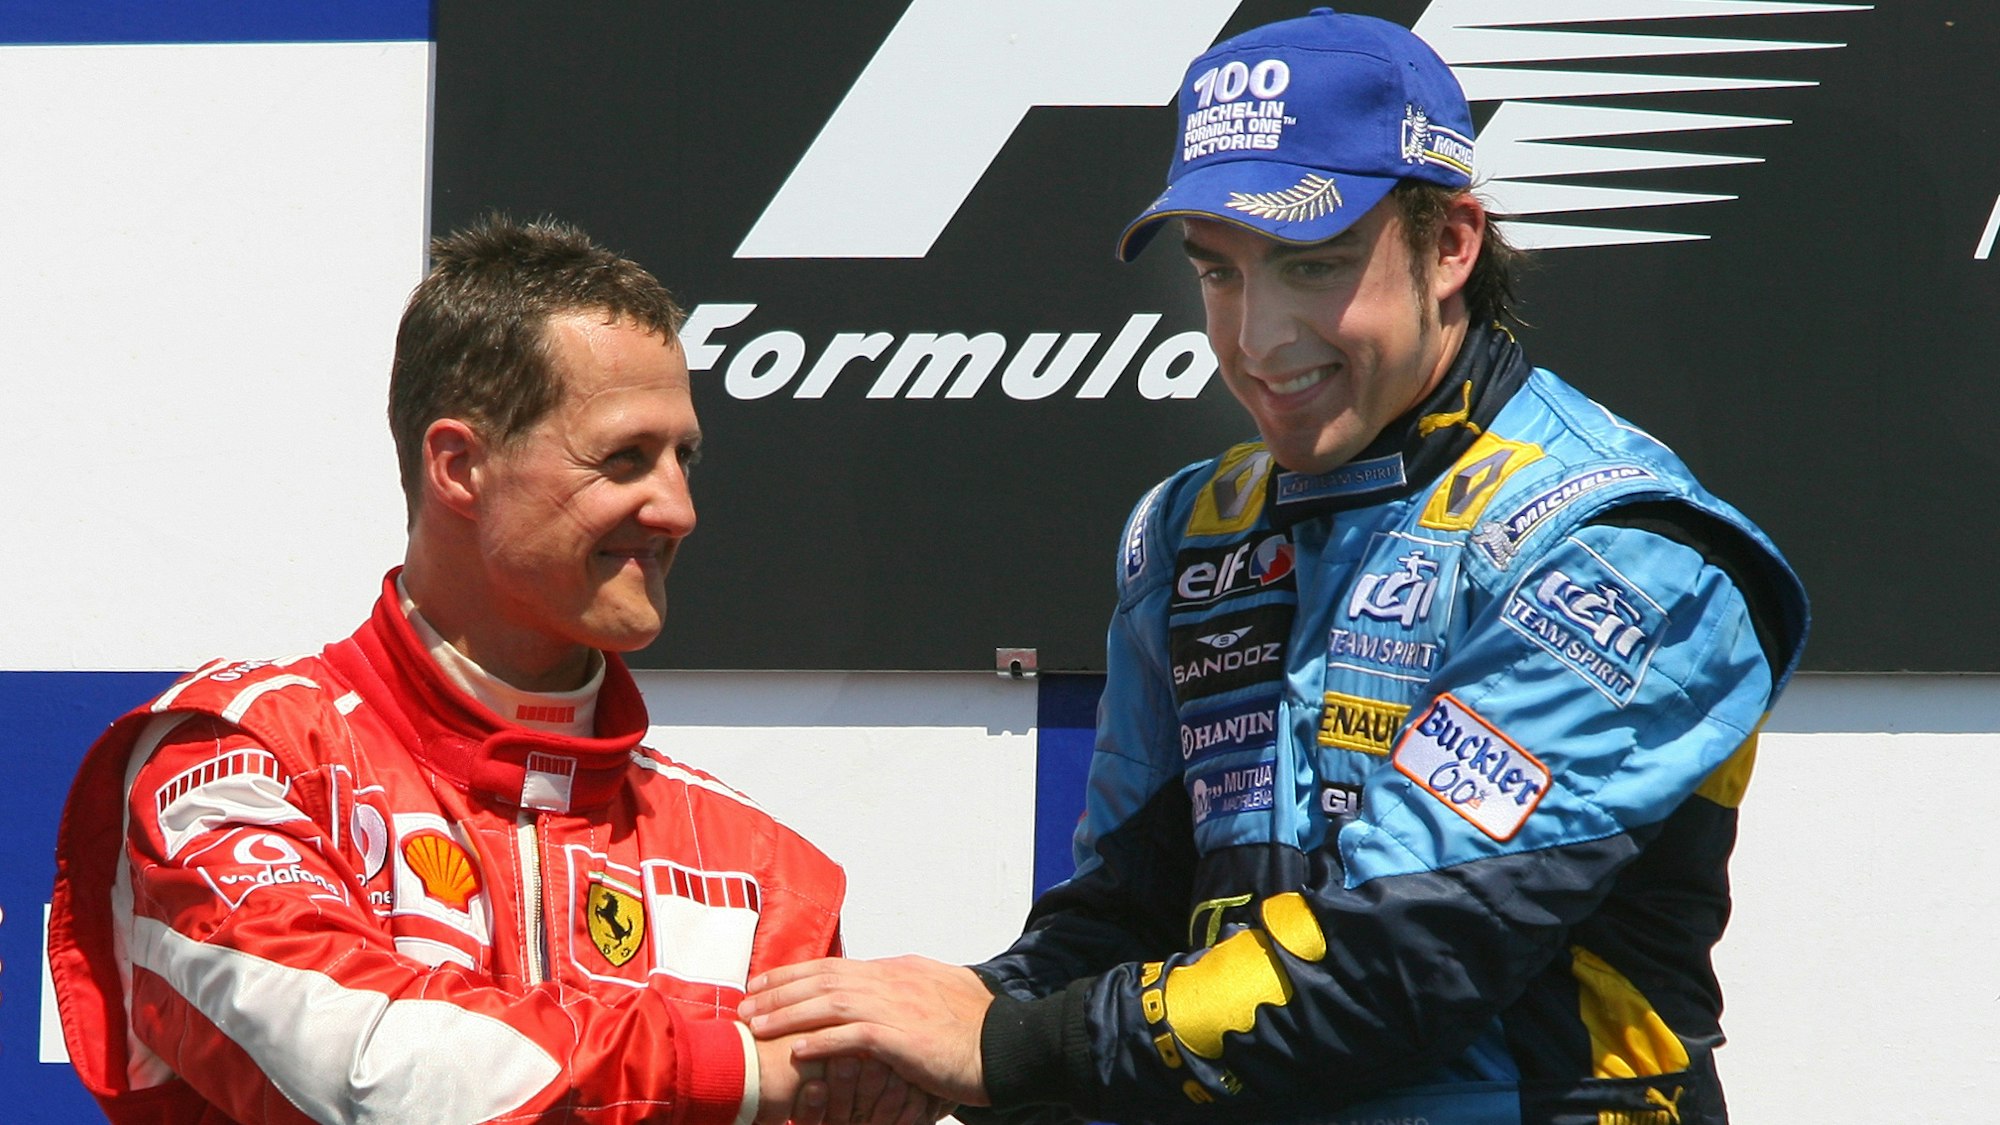 Michael Schumacher gratuliert Fernando Alonso zu seinem Renn-Sieg beim Großen Preis von Kanada in der Formel 1.